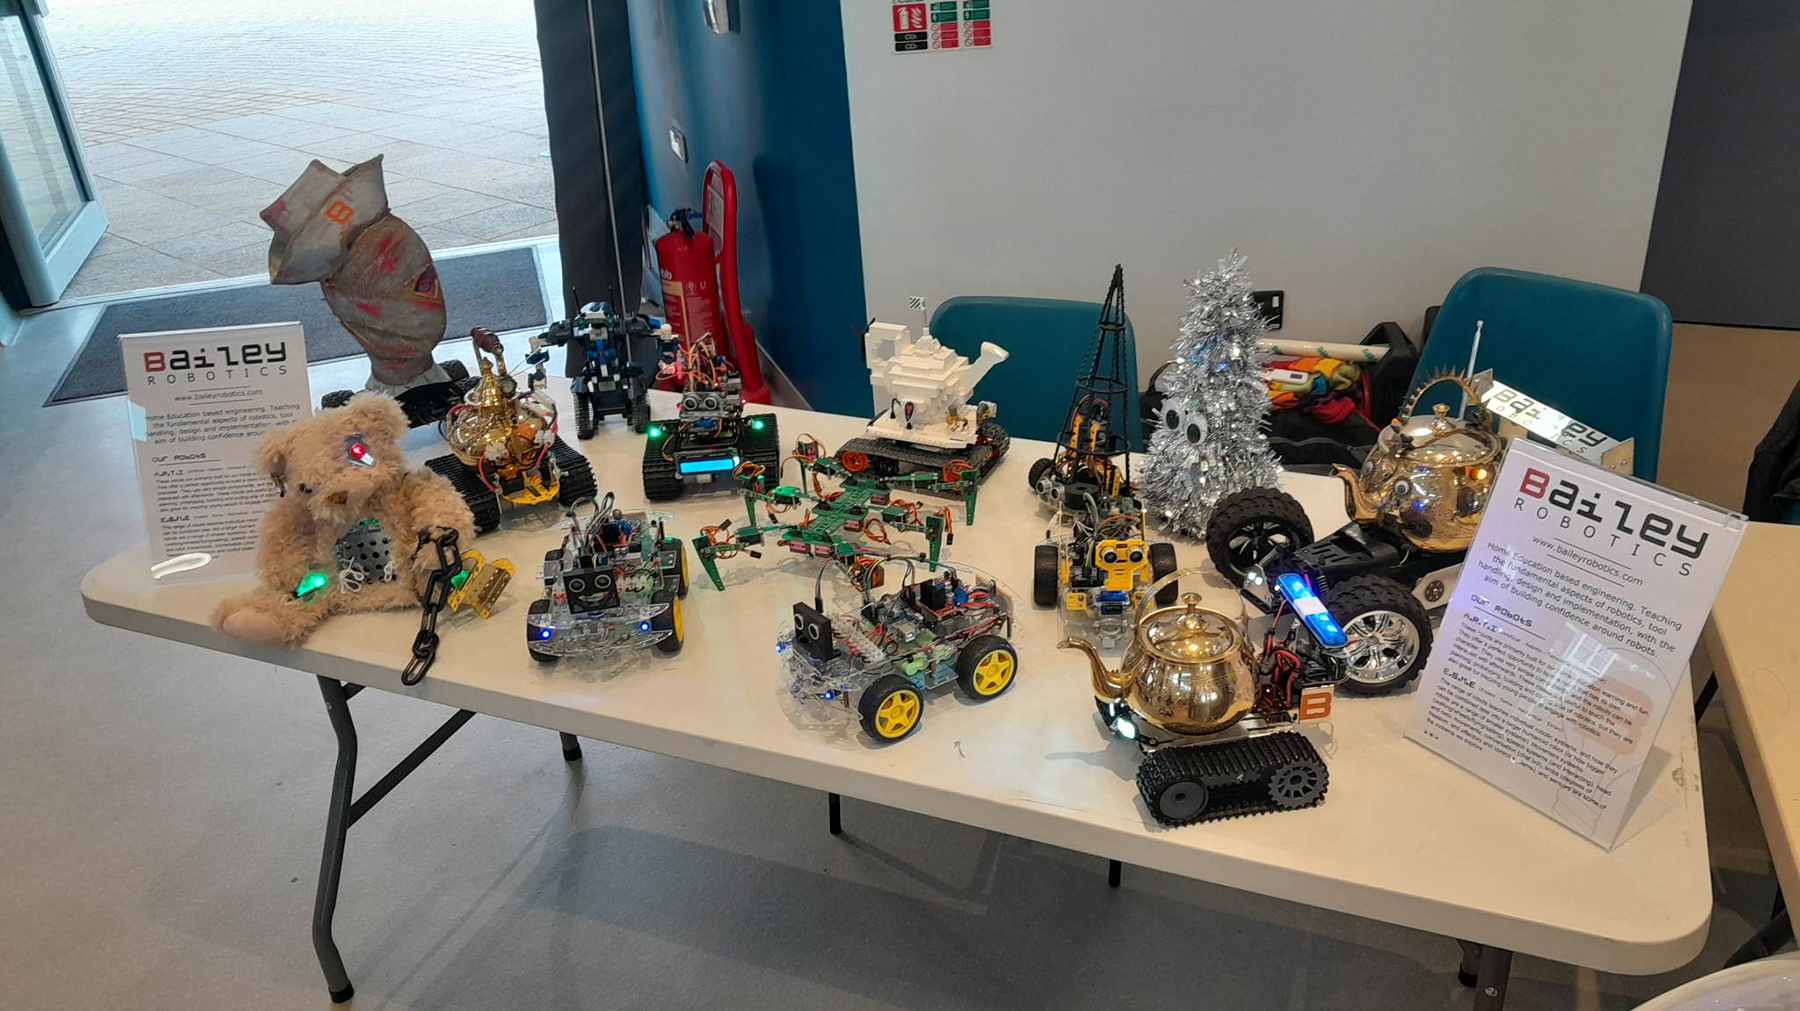 Bailey Robotics at Beachlab 2023 in Aberystwyth